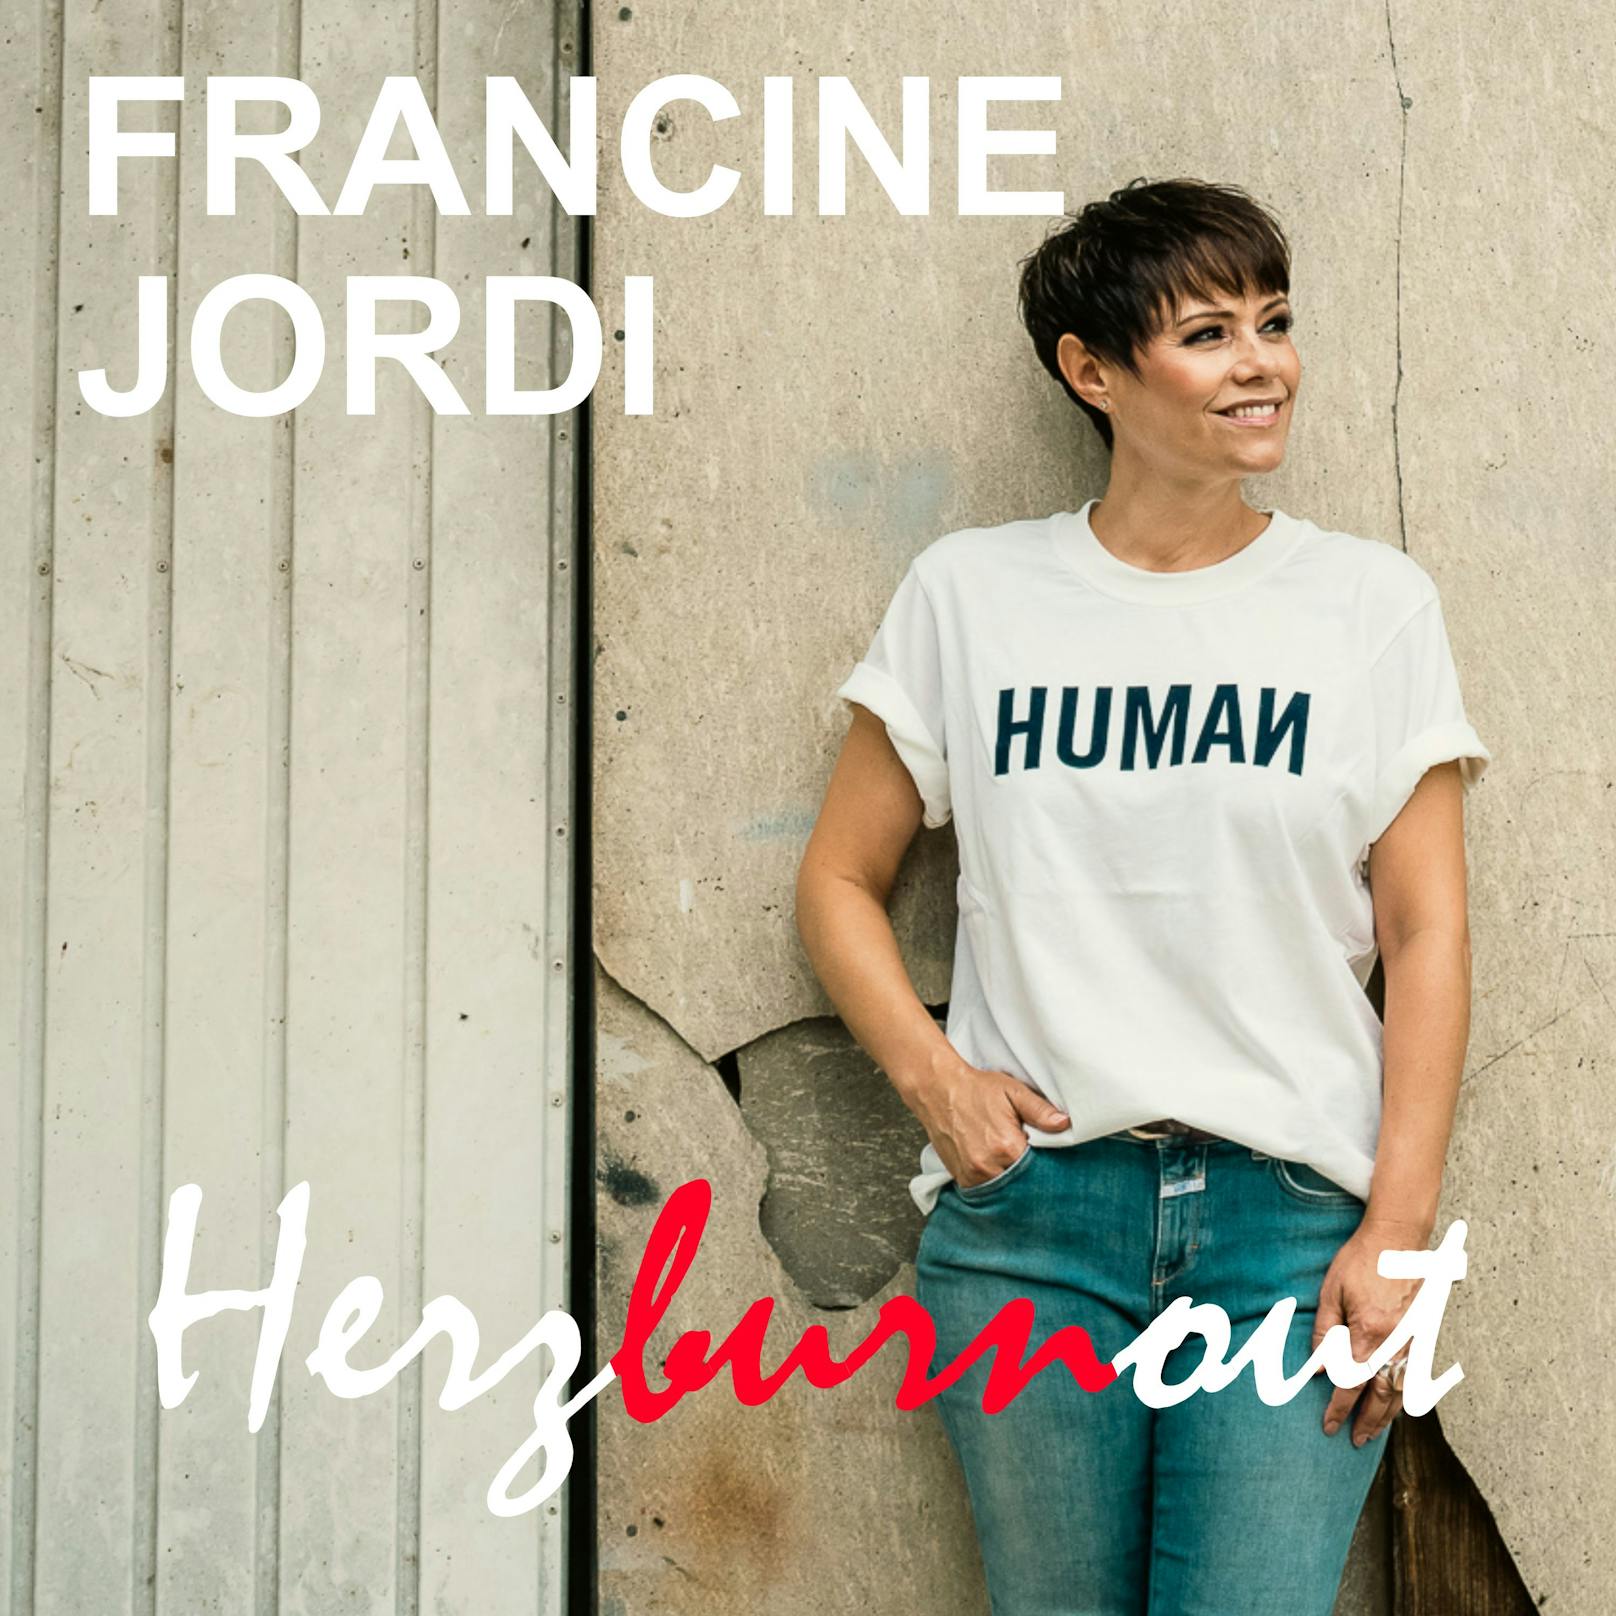 Das neue Jahr wird für <strong>Francine Jordi</strong>&nbsp;genauso spannend starten wie das alte endet und sie legt direkt mit einem musikalischen Ausrufezeichen los.